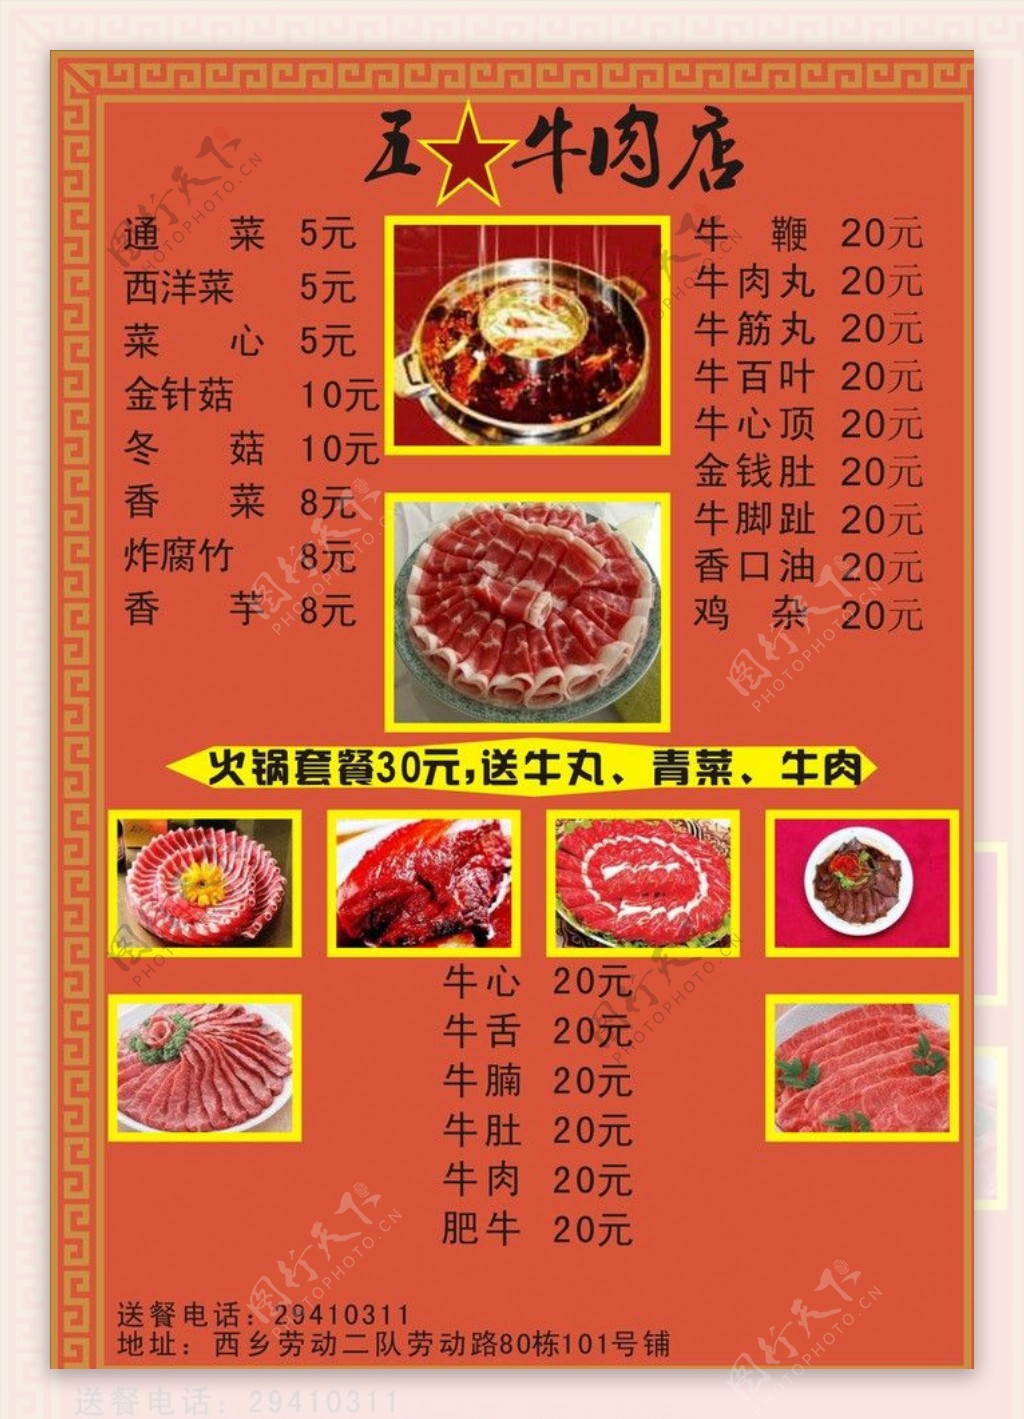 牛肉餐厅的菜单图片